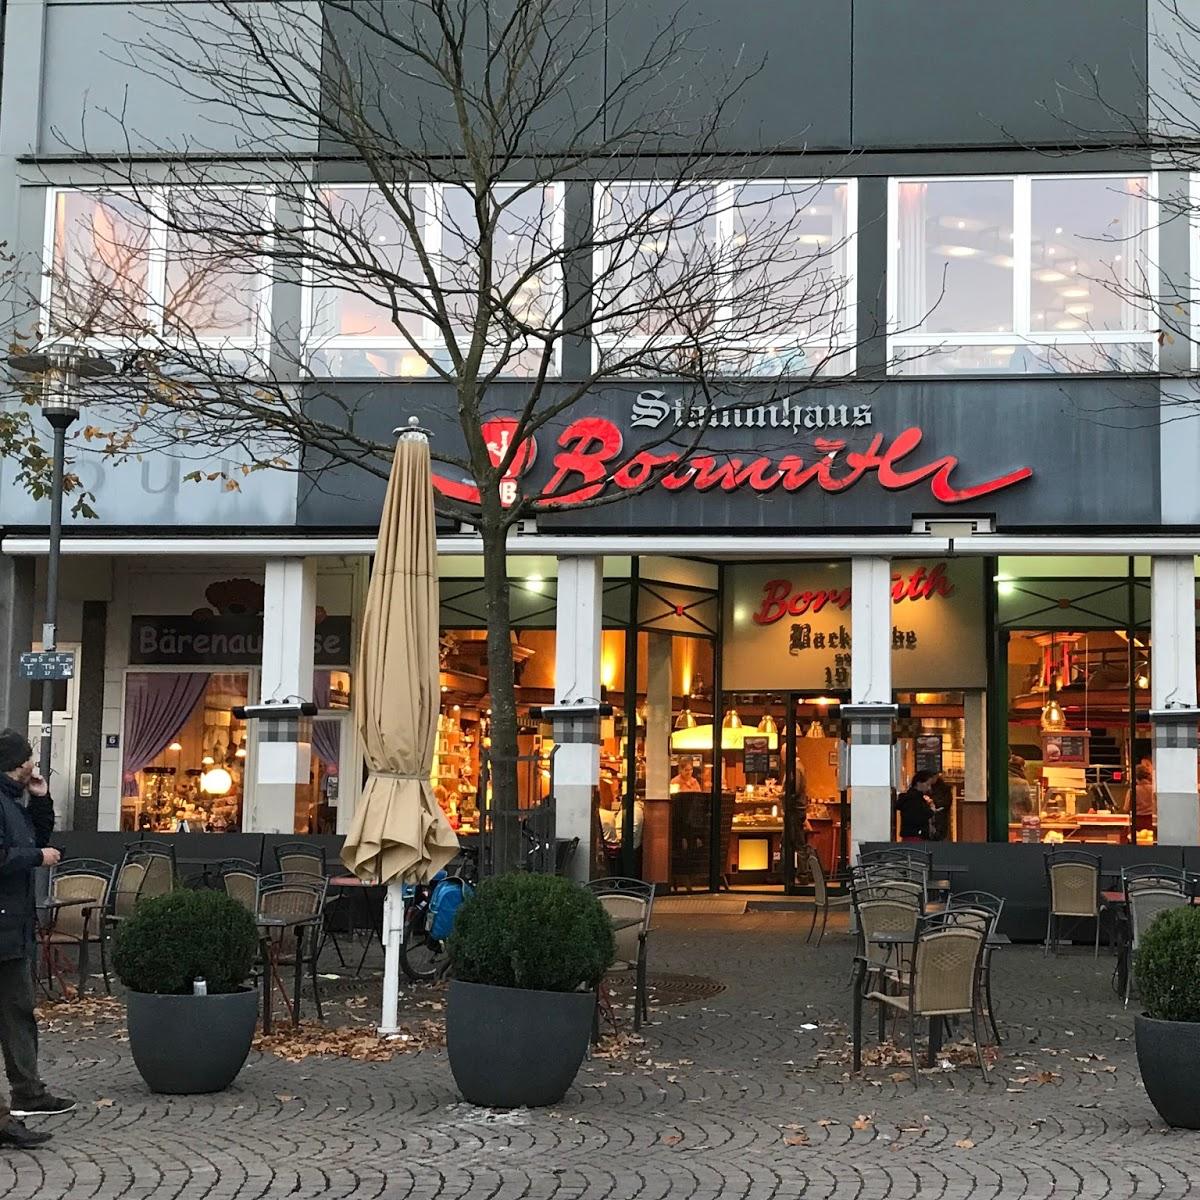 Restaurant "Bormuth - Der gute Bäcker" in Darmstadt